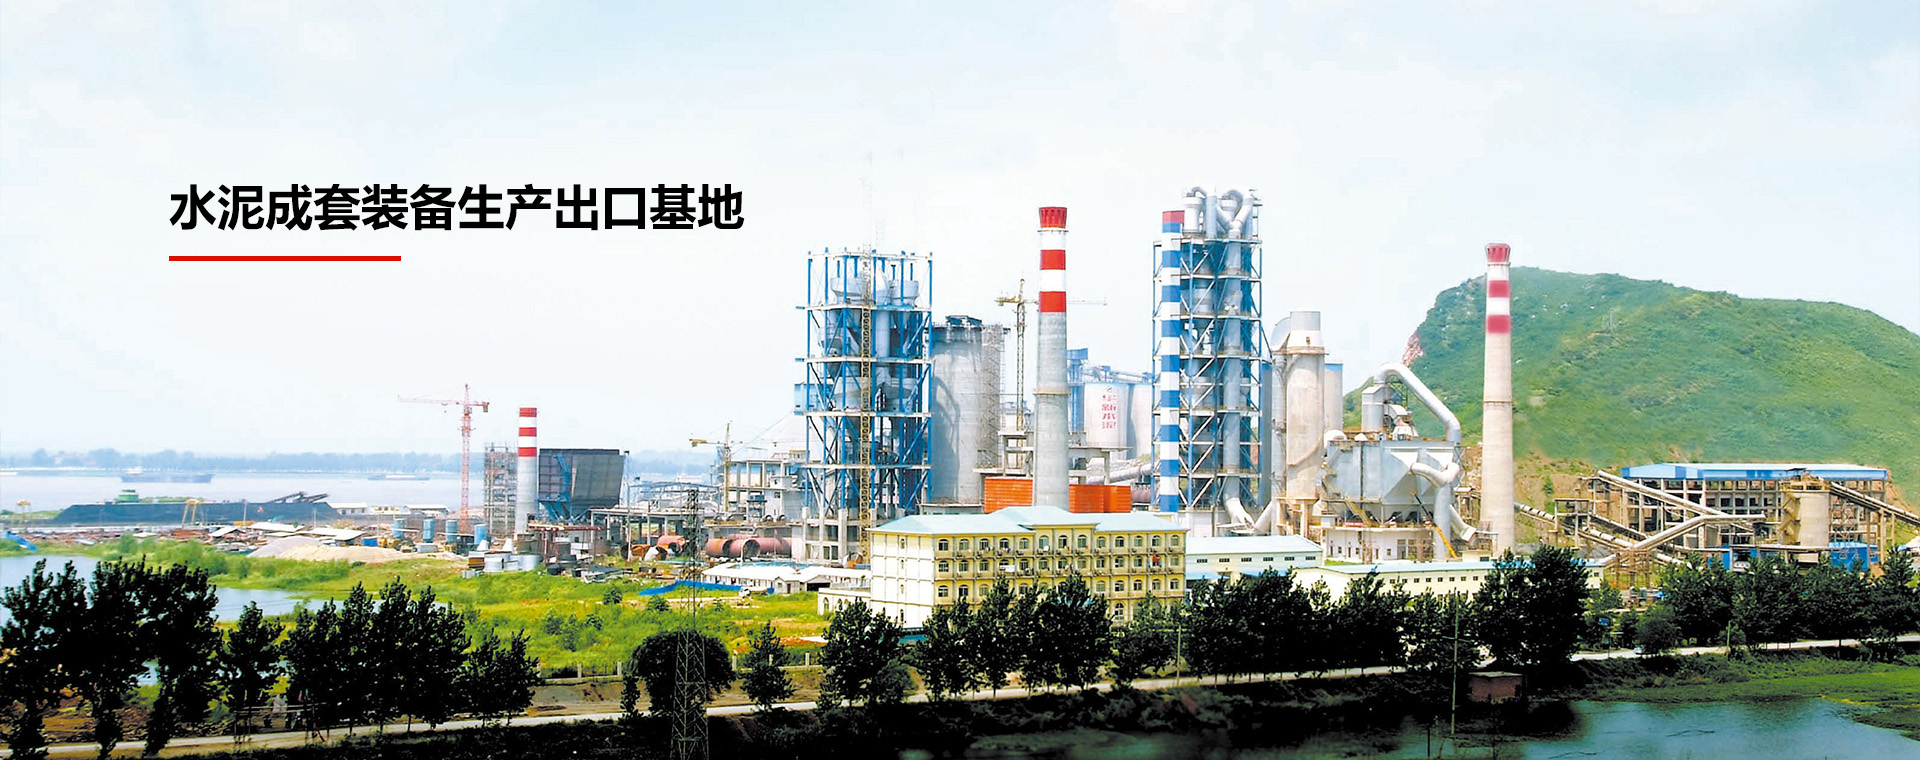 水泥成(chéng)套裝備生産出口基地